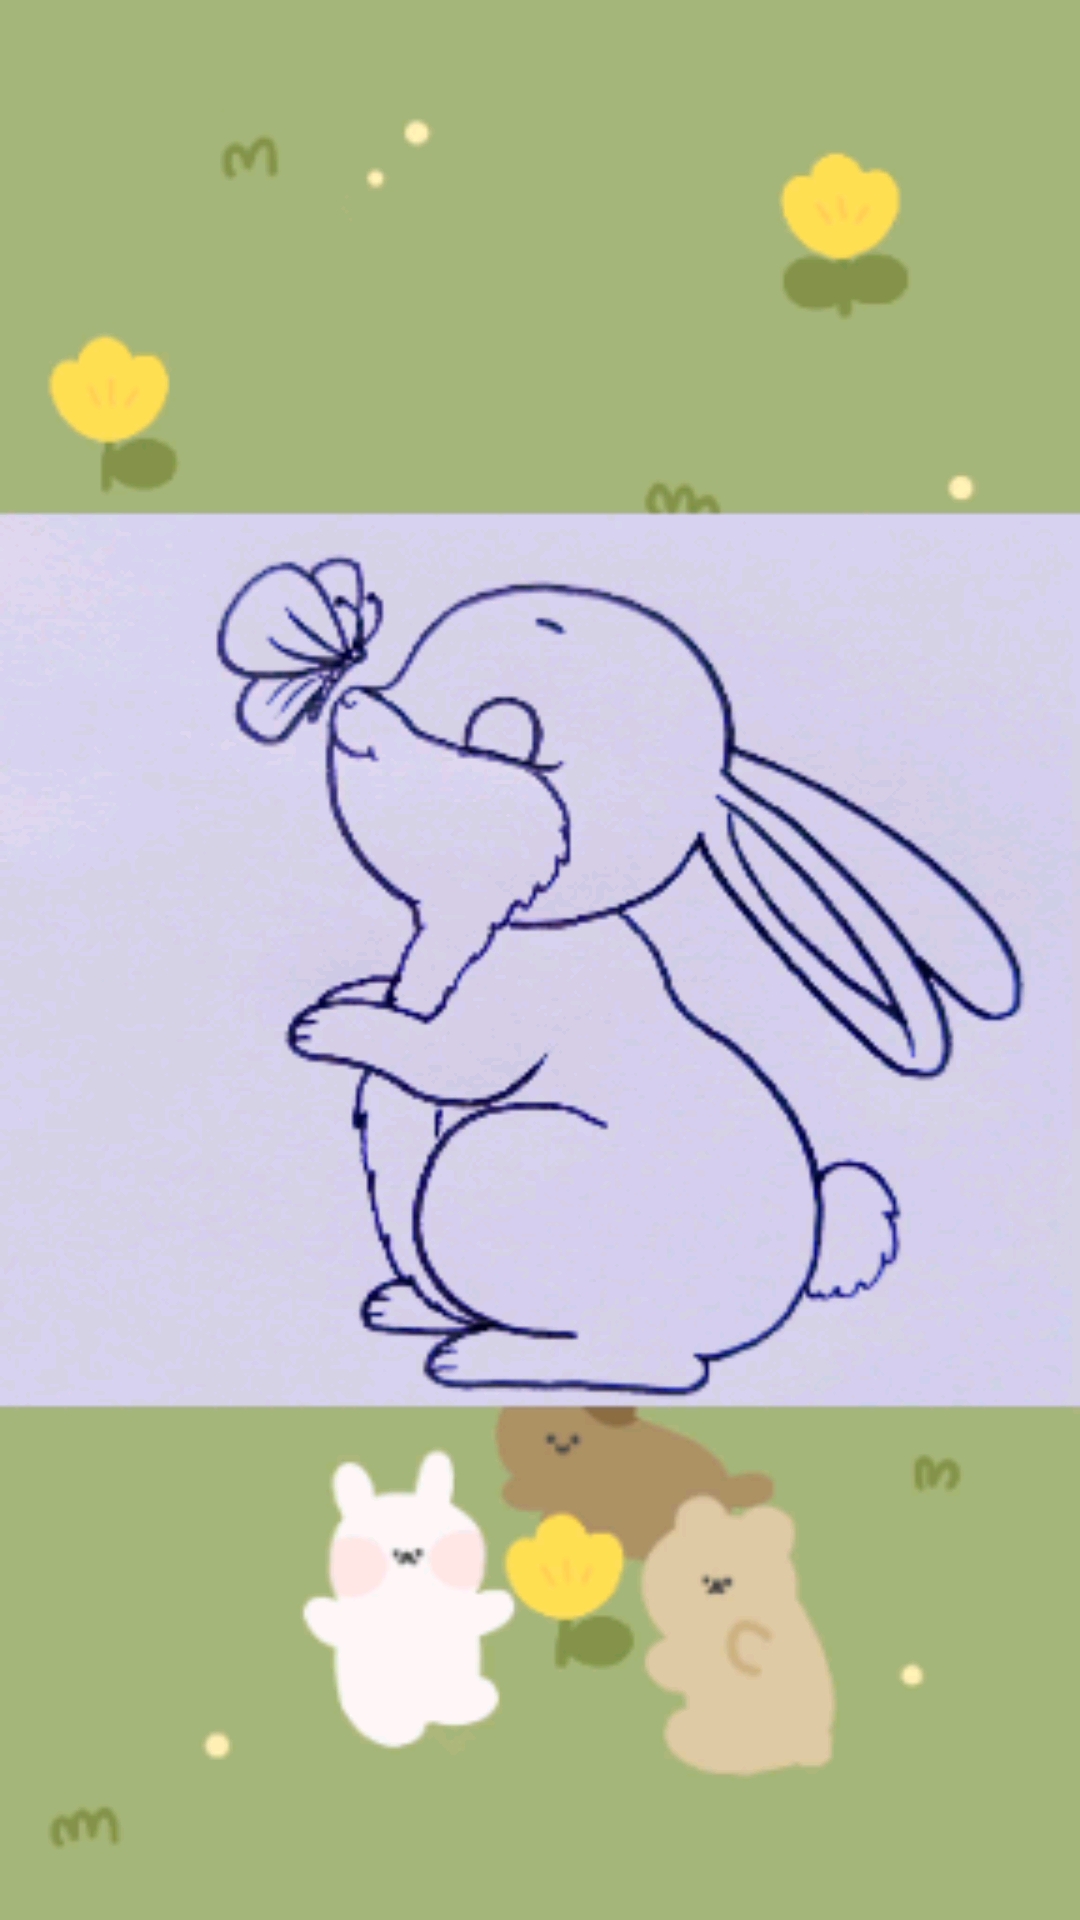 画一只超萌的小兔子图片